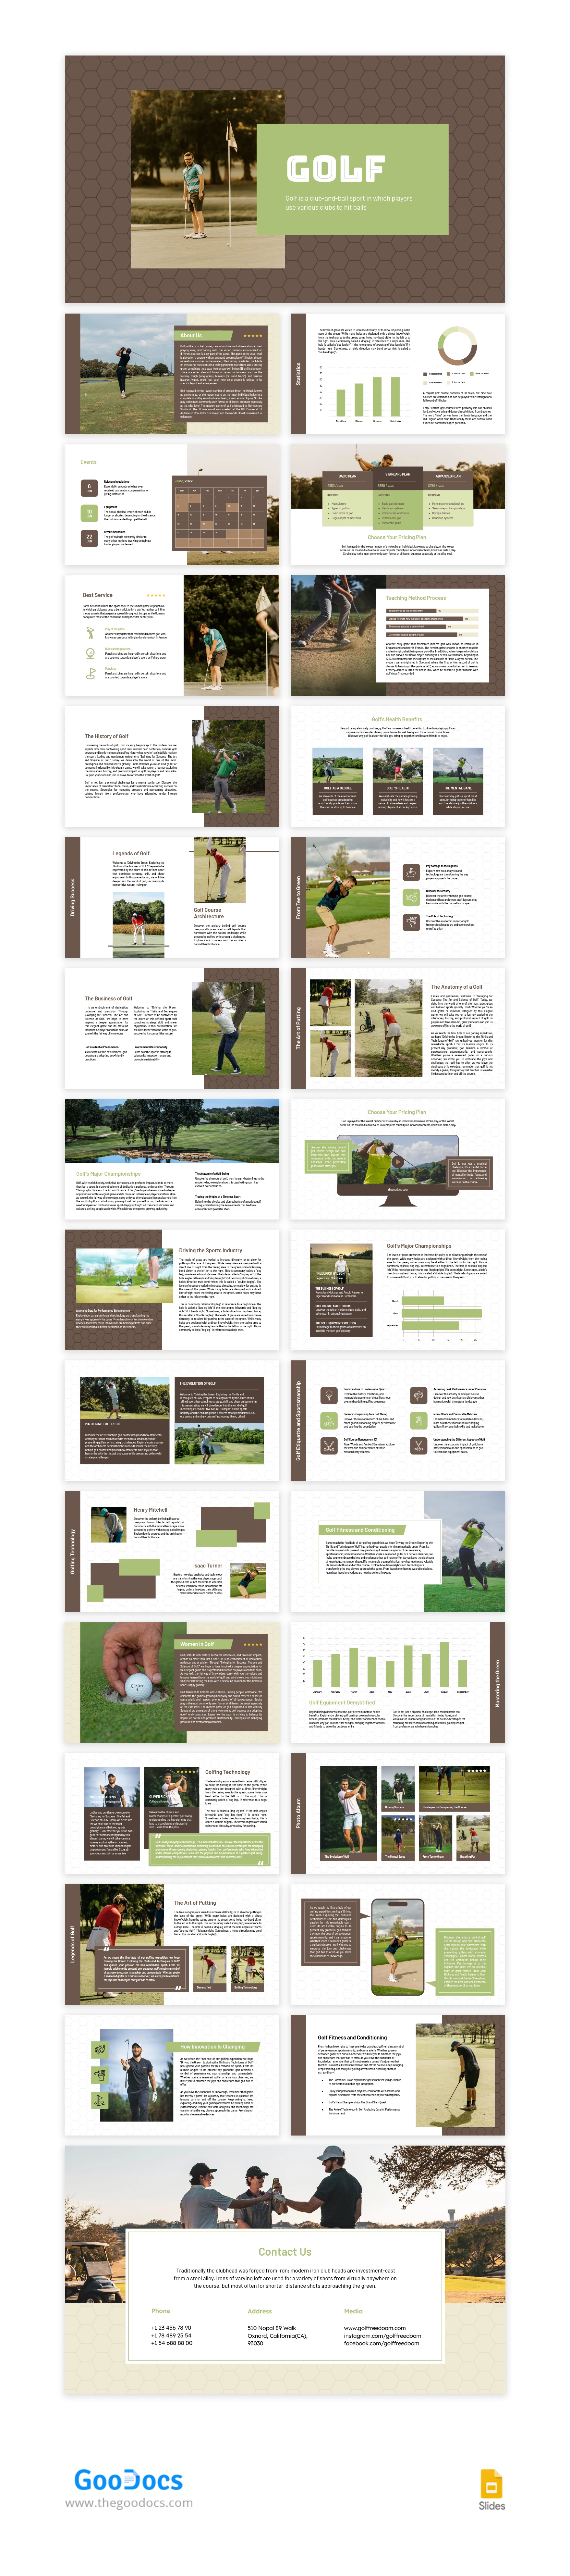 Lindo Esporte Marrom Golfe - free Google Docs Template - 10067059